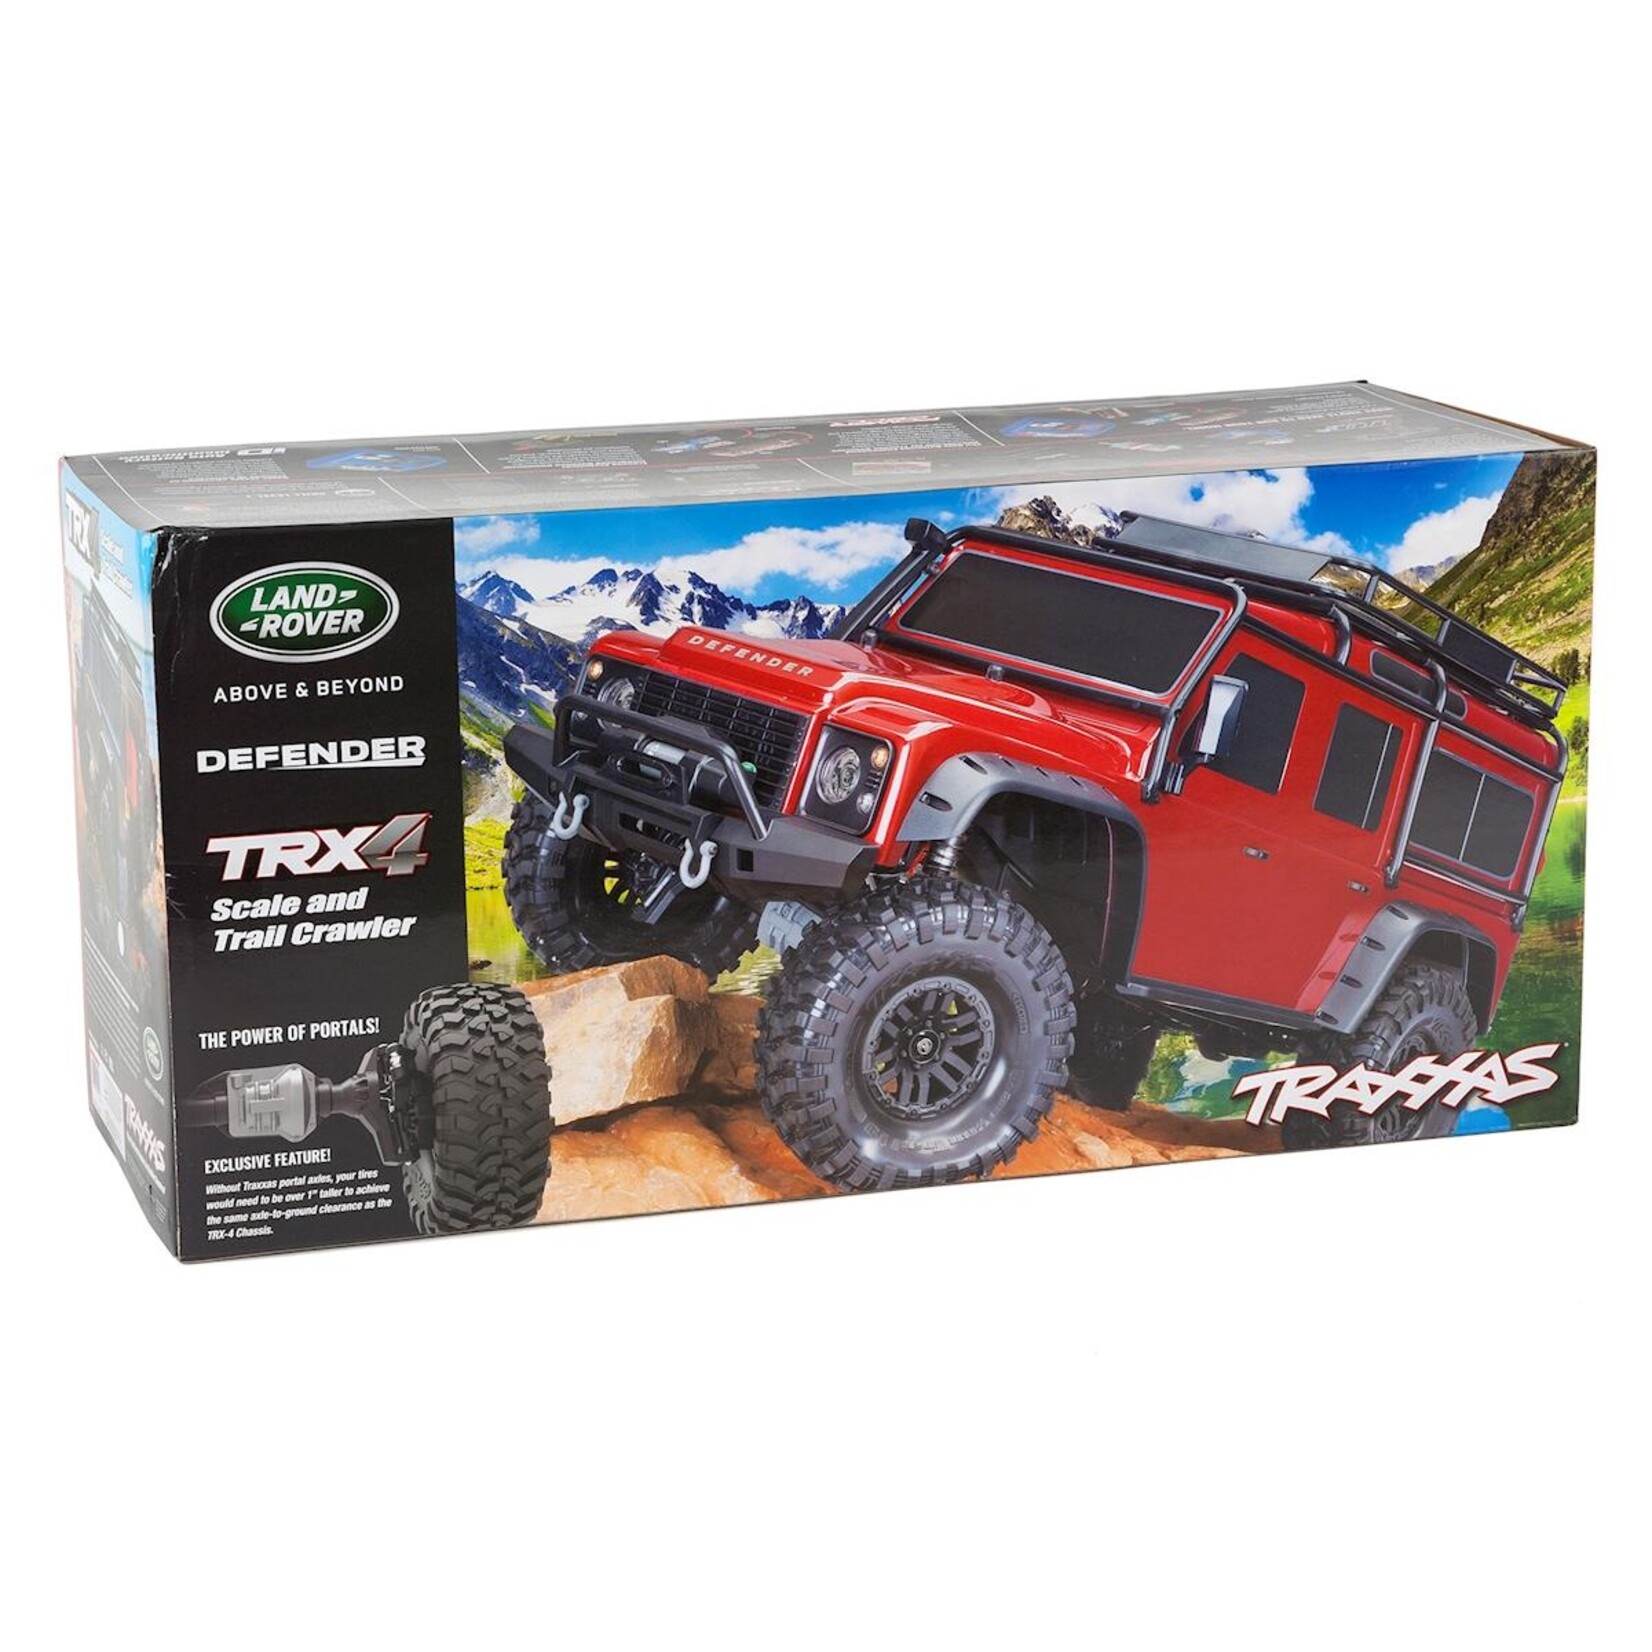 Traxxas Traxxas TRX-4 1/10 Scale Trail Rock Crawler w/Land Rover Defender Body (Blue) w/XL-5 ESC & TQi 2.4GHz Radio #82056-4-BLUE